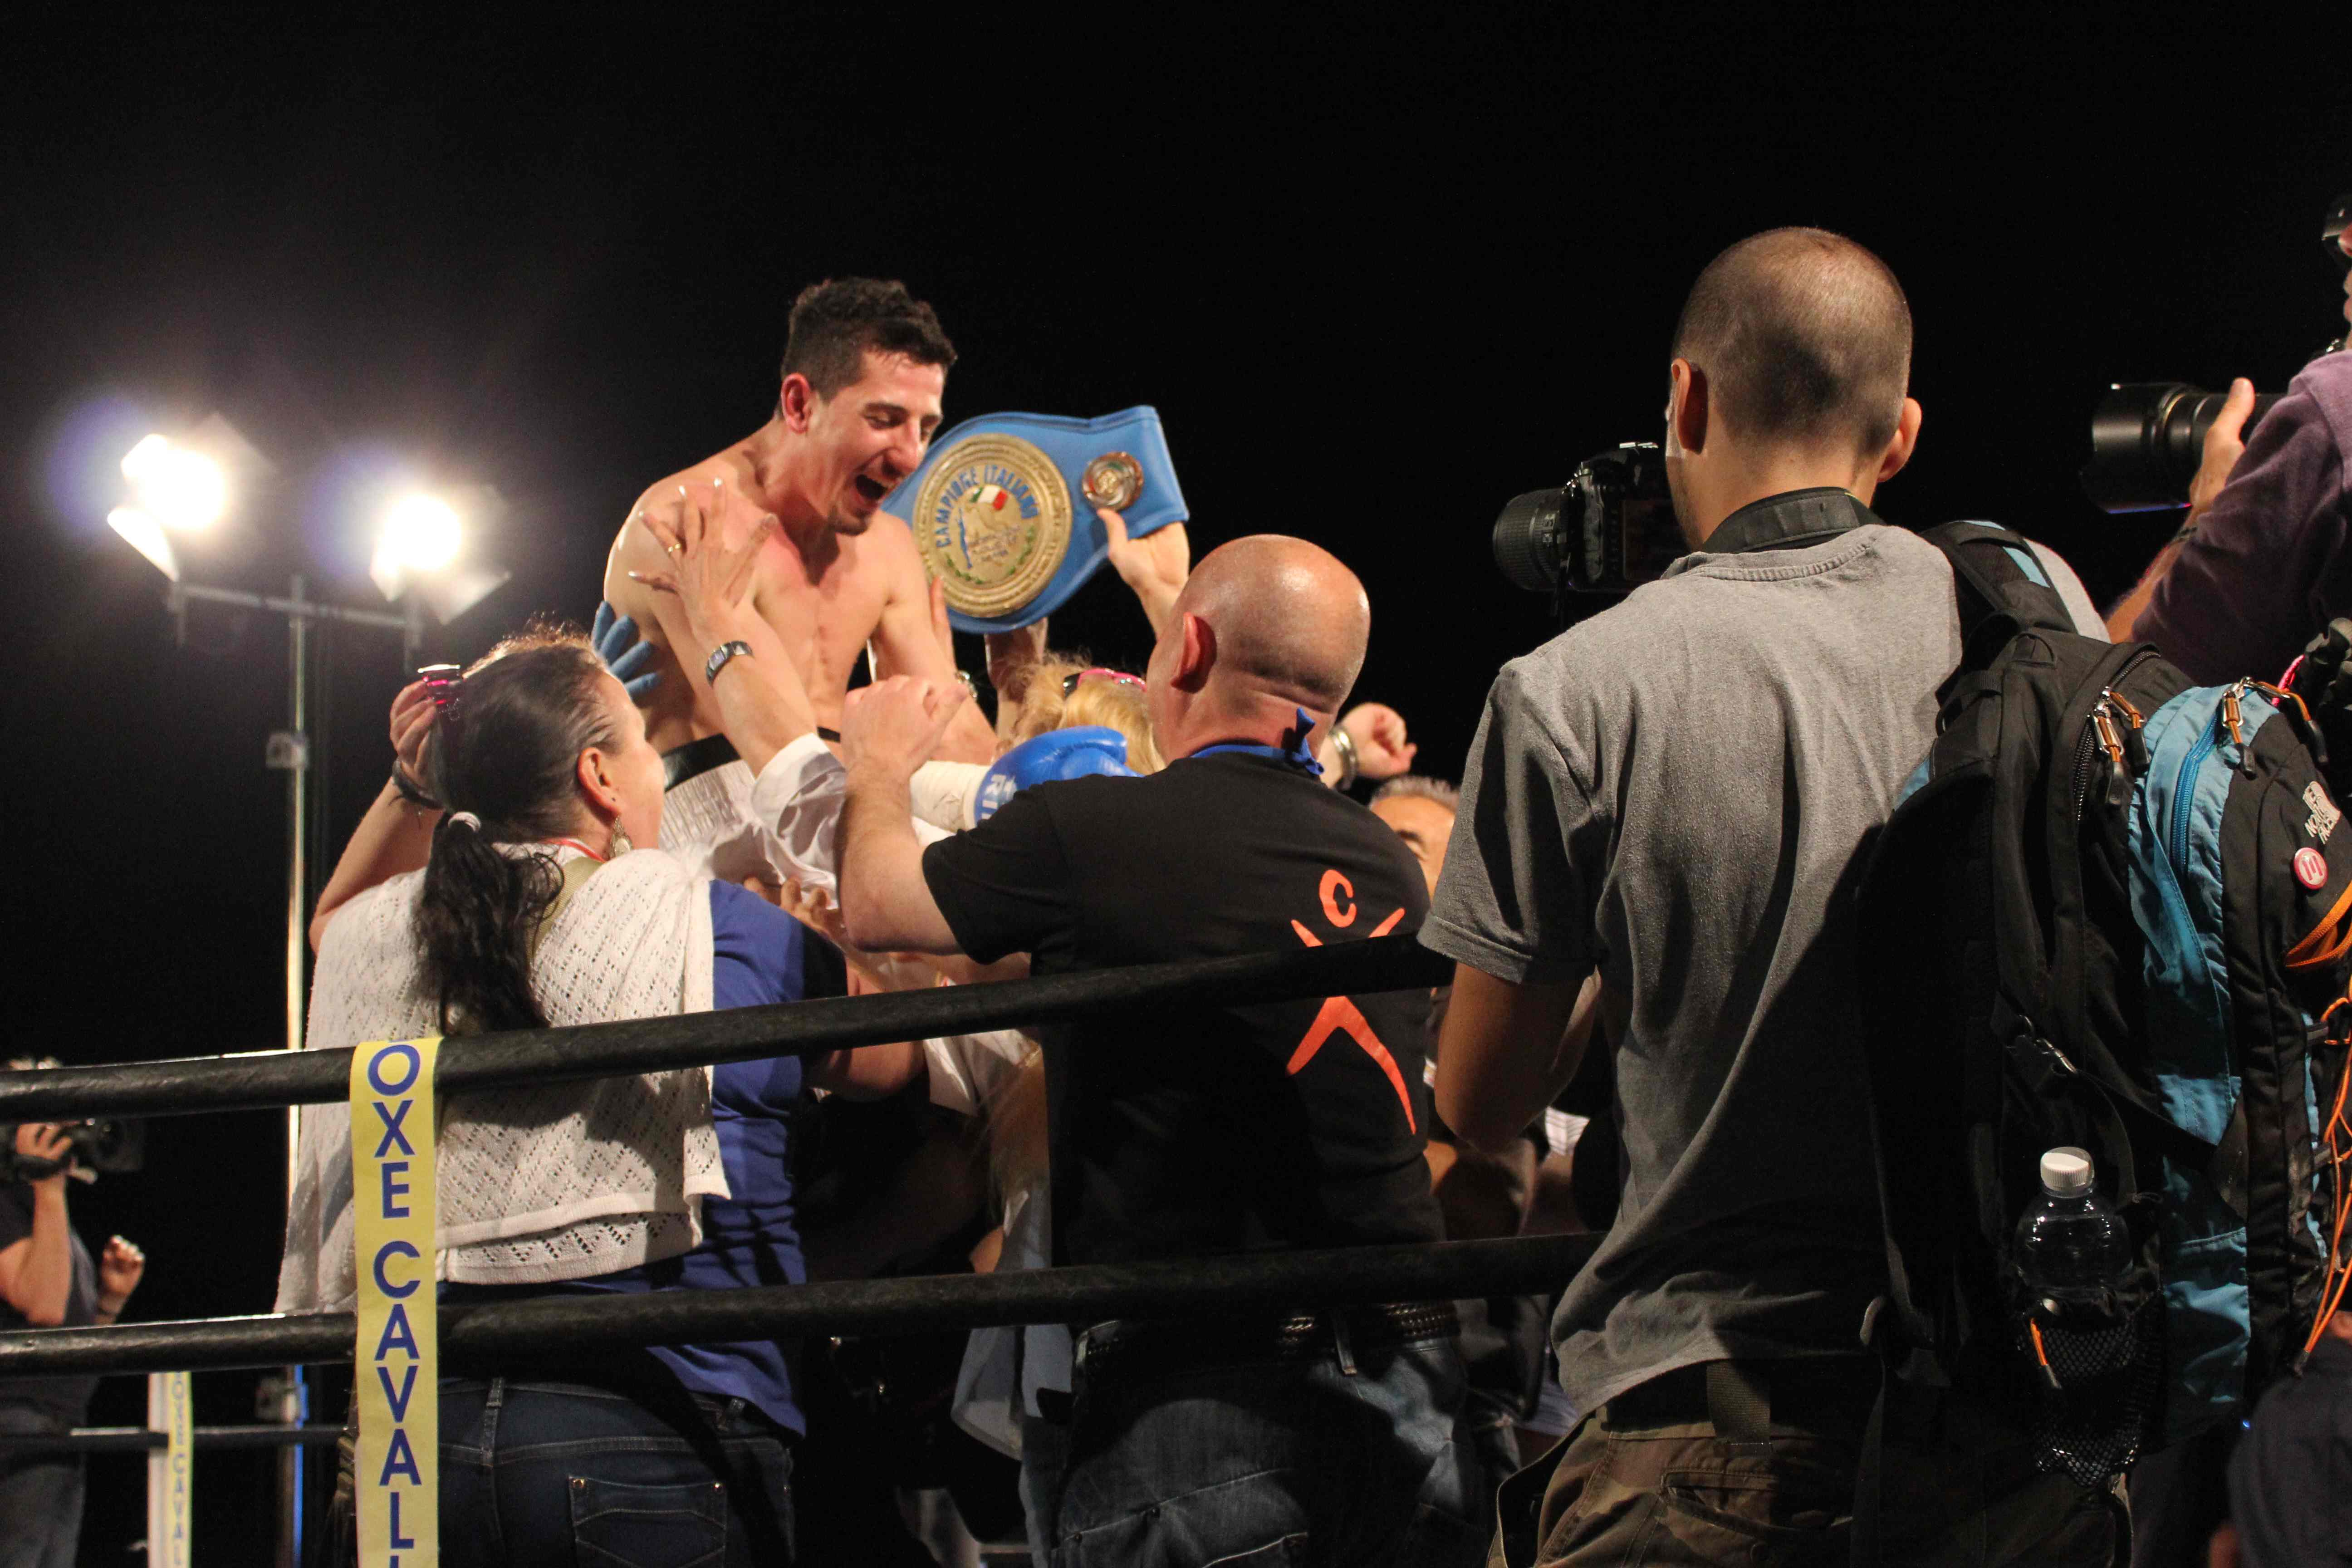 Andrea Scarpa festeggia la vittoria sul ring. Foto di Volfango Rizzi - SPQeR.